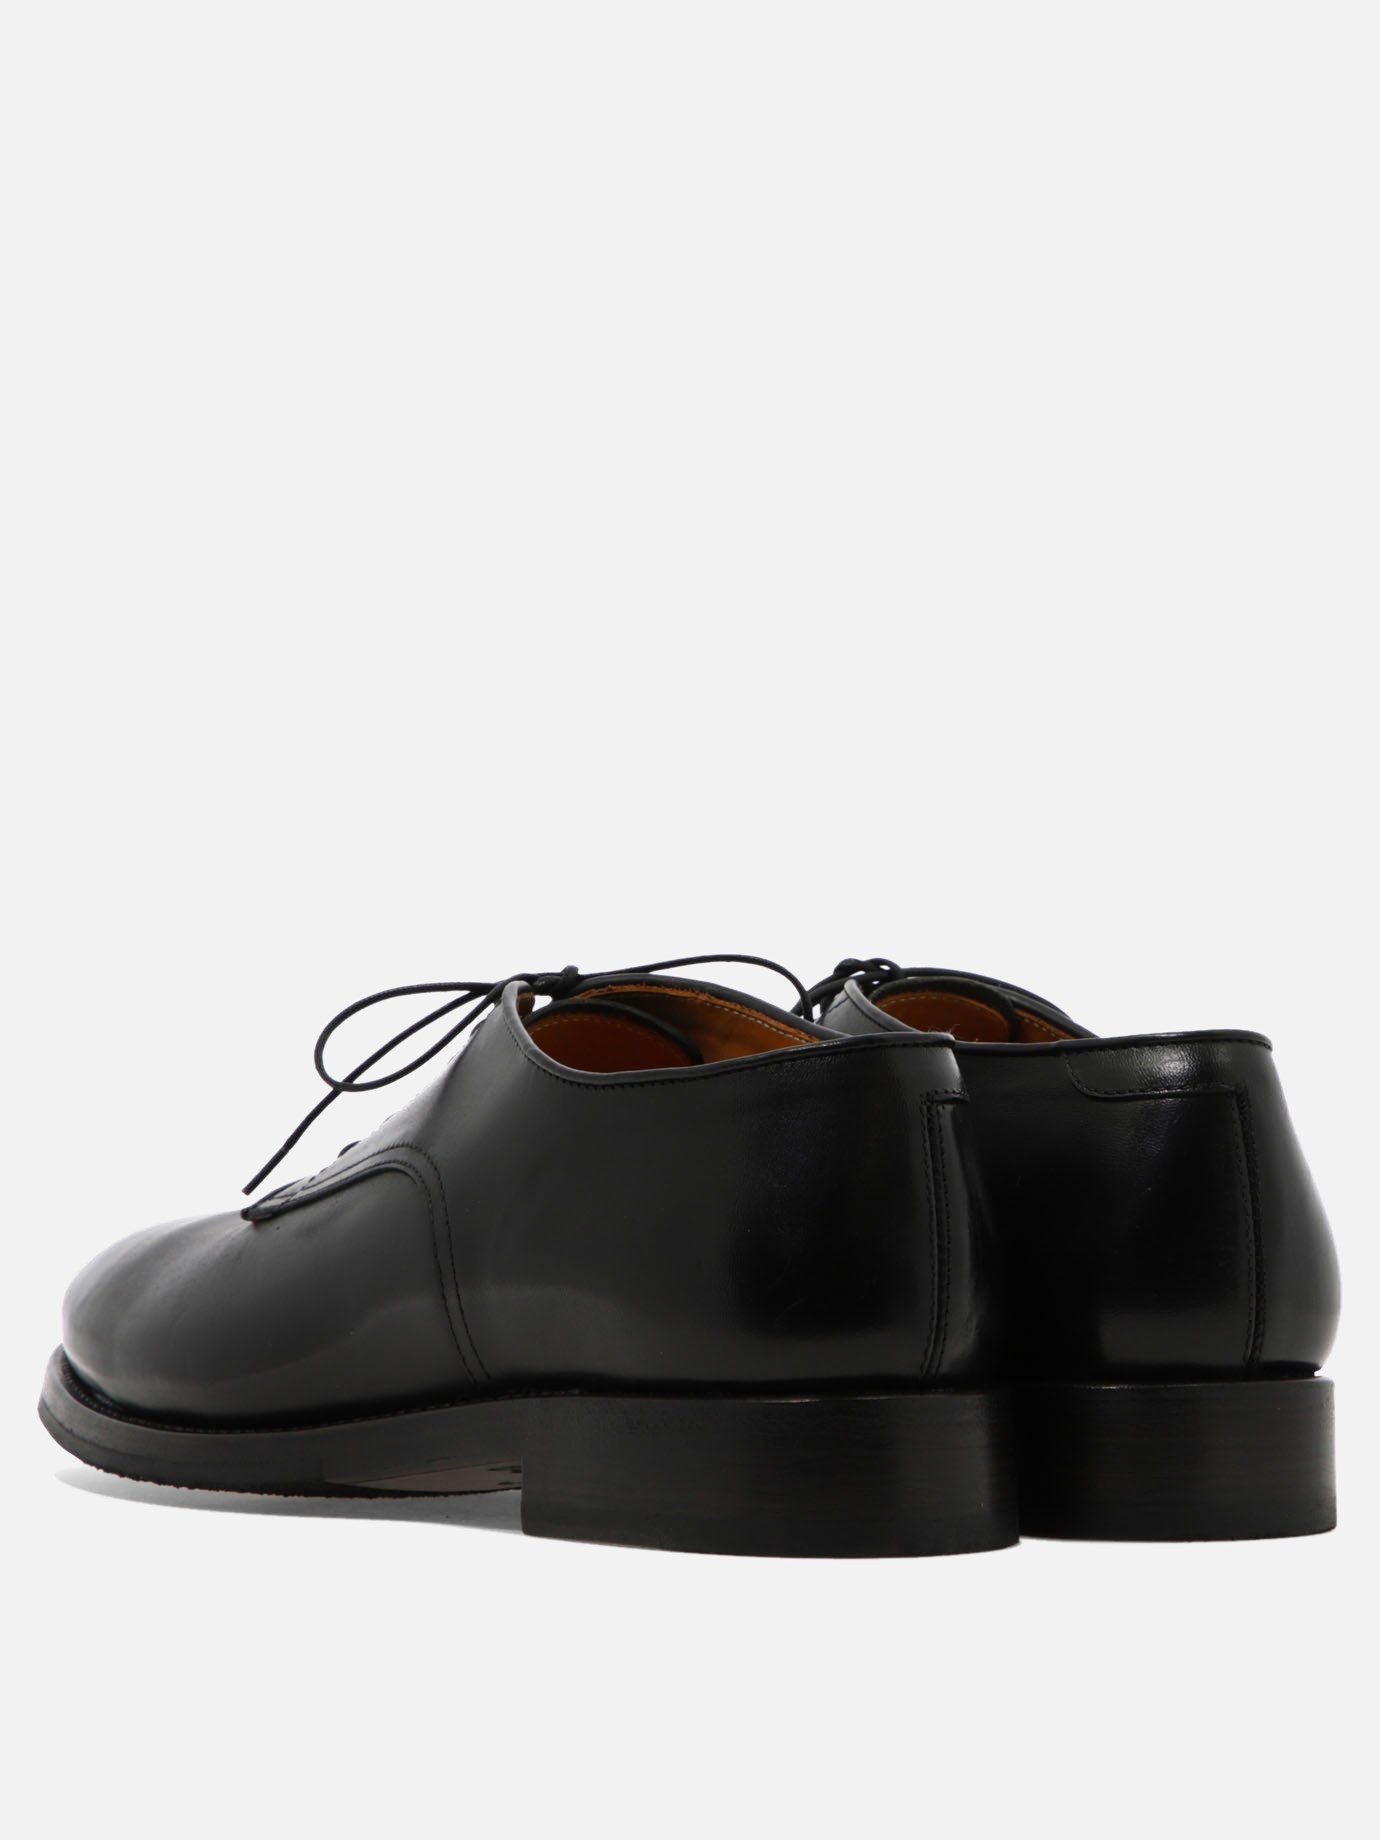 送料無料 OAMC cut oxford leather shoes 27.5 - 通販 - www